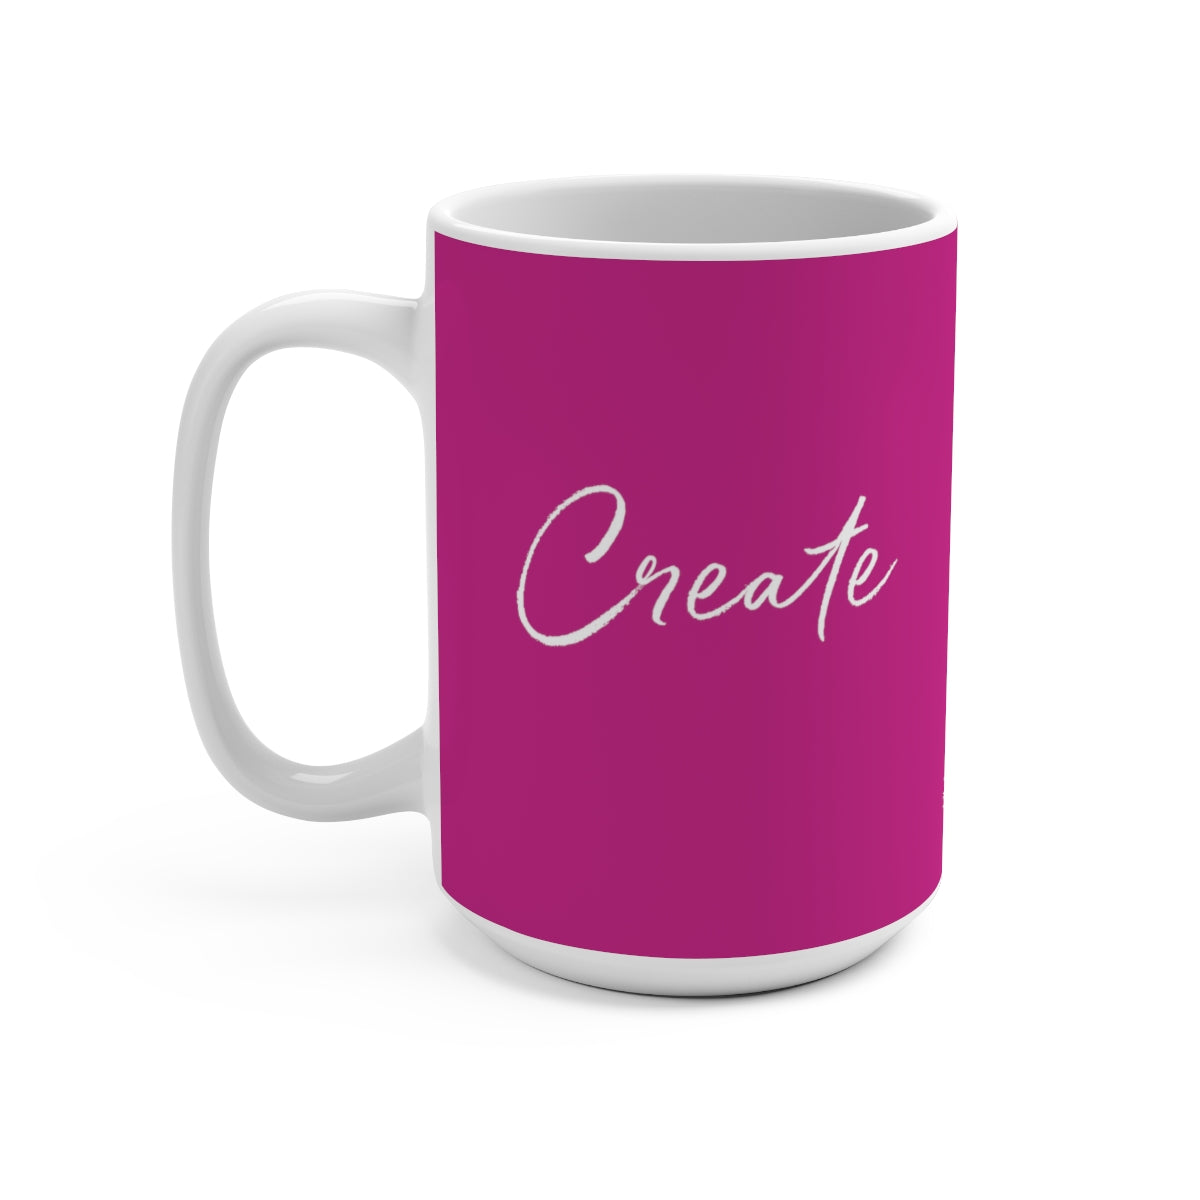 Pink Create Mug